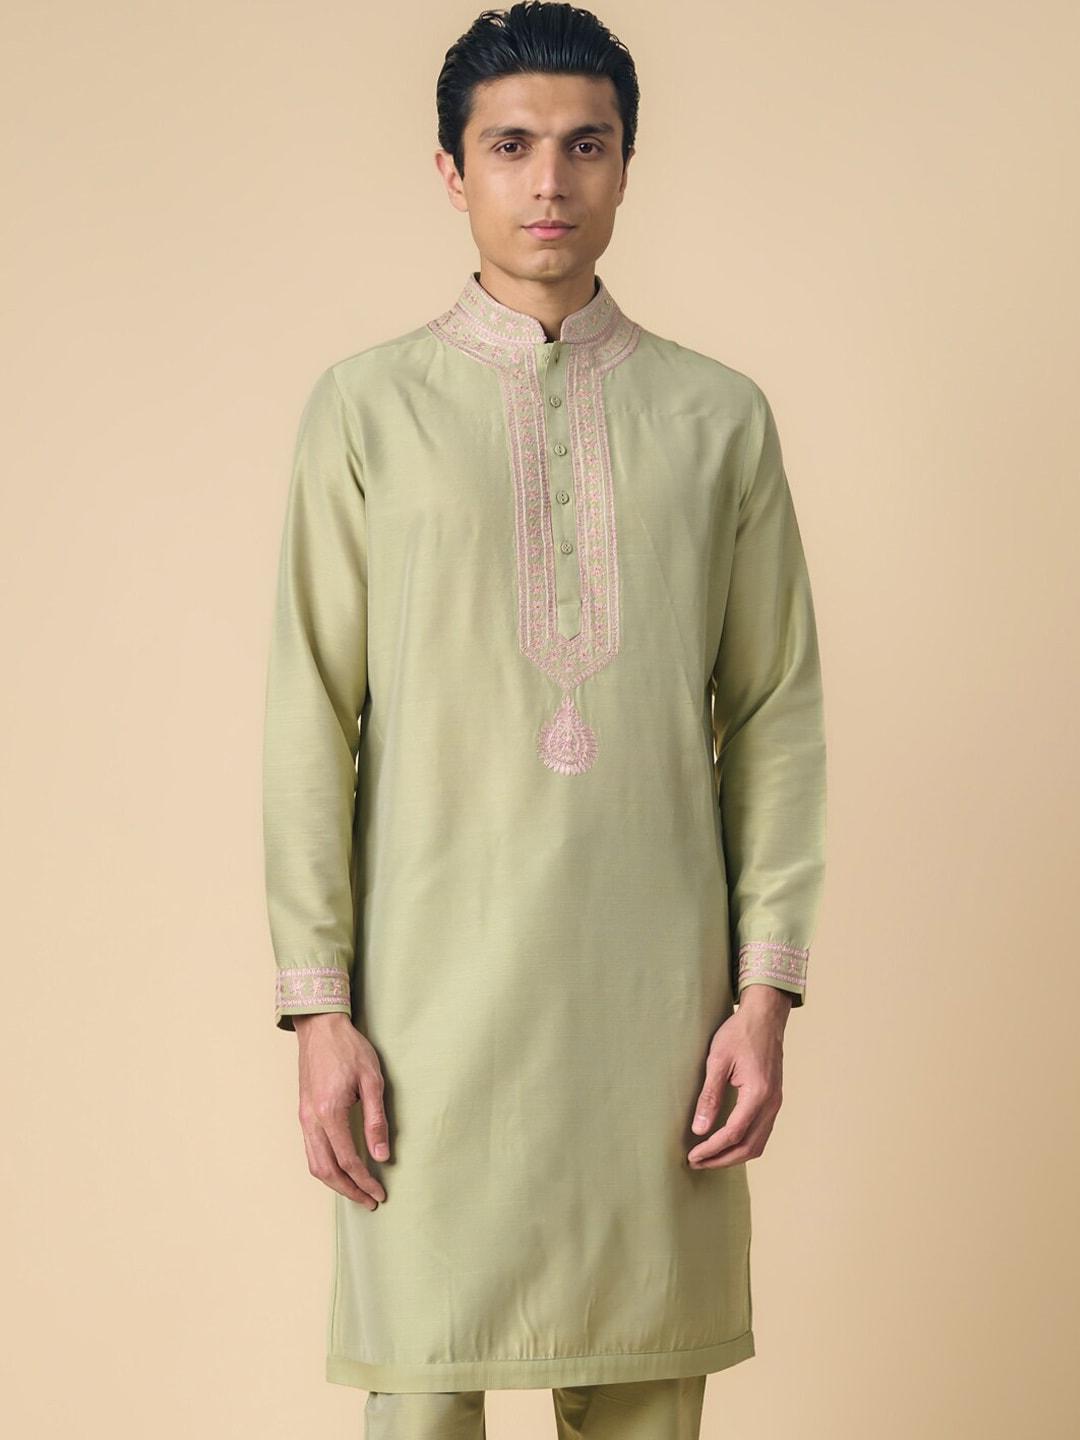 tasva ethnic motifs yoke design thread work straight kurta with pyjamas